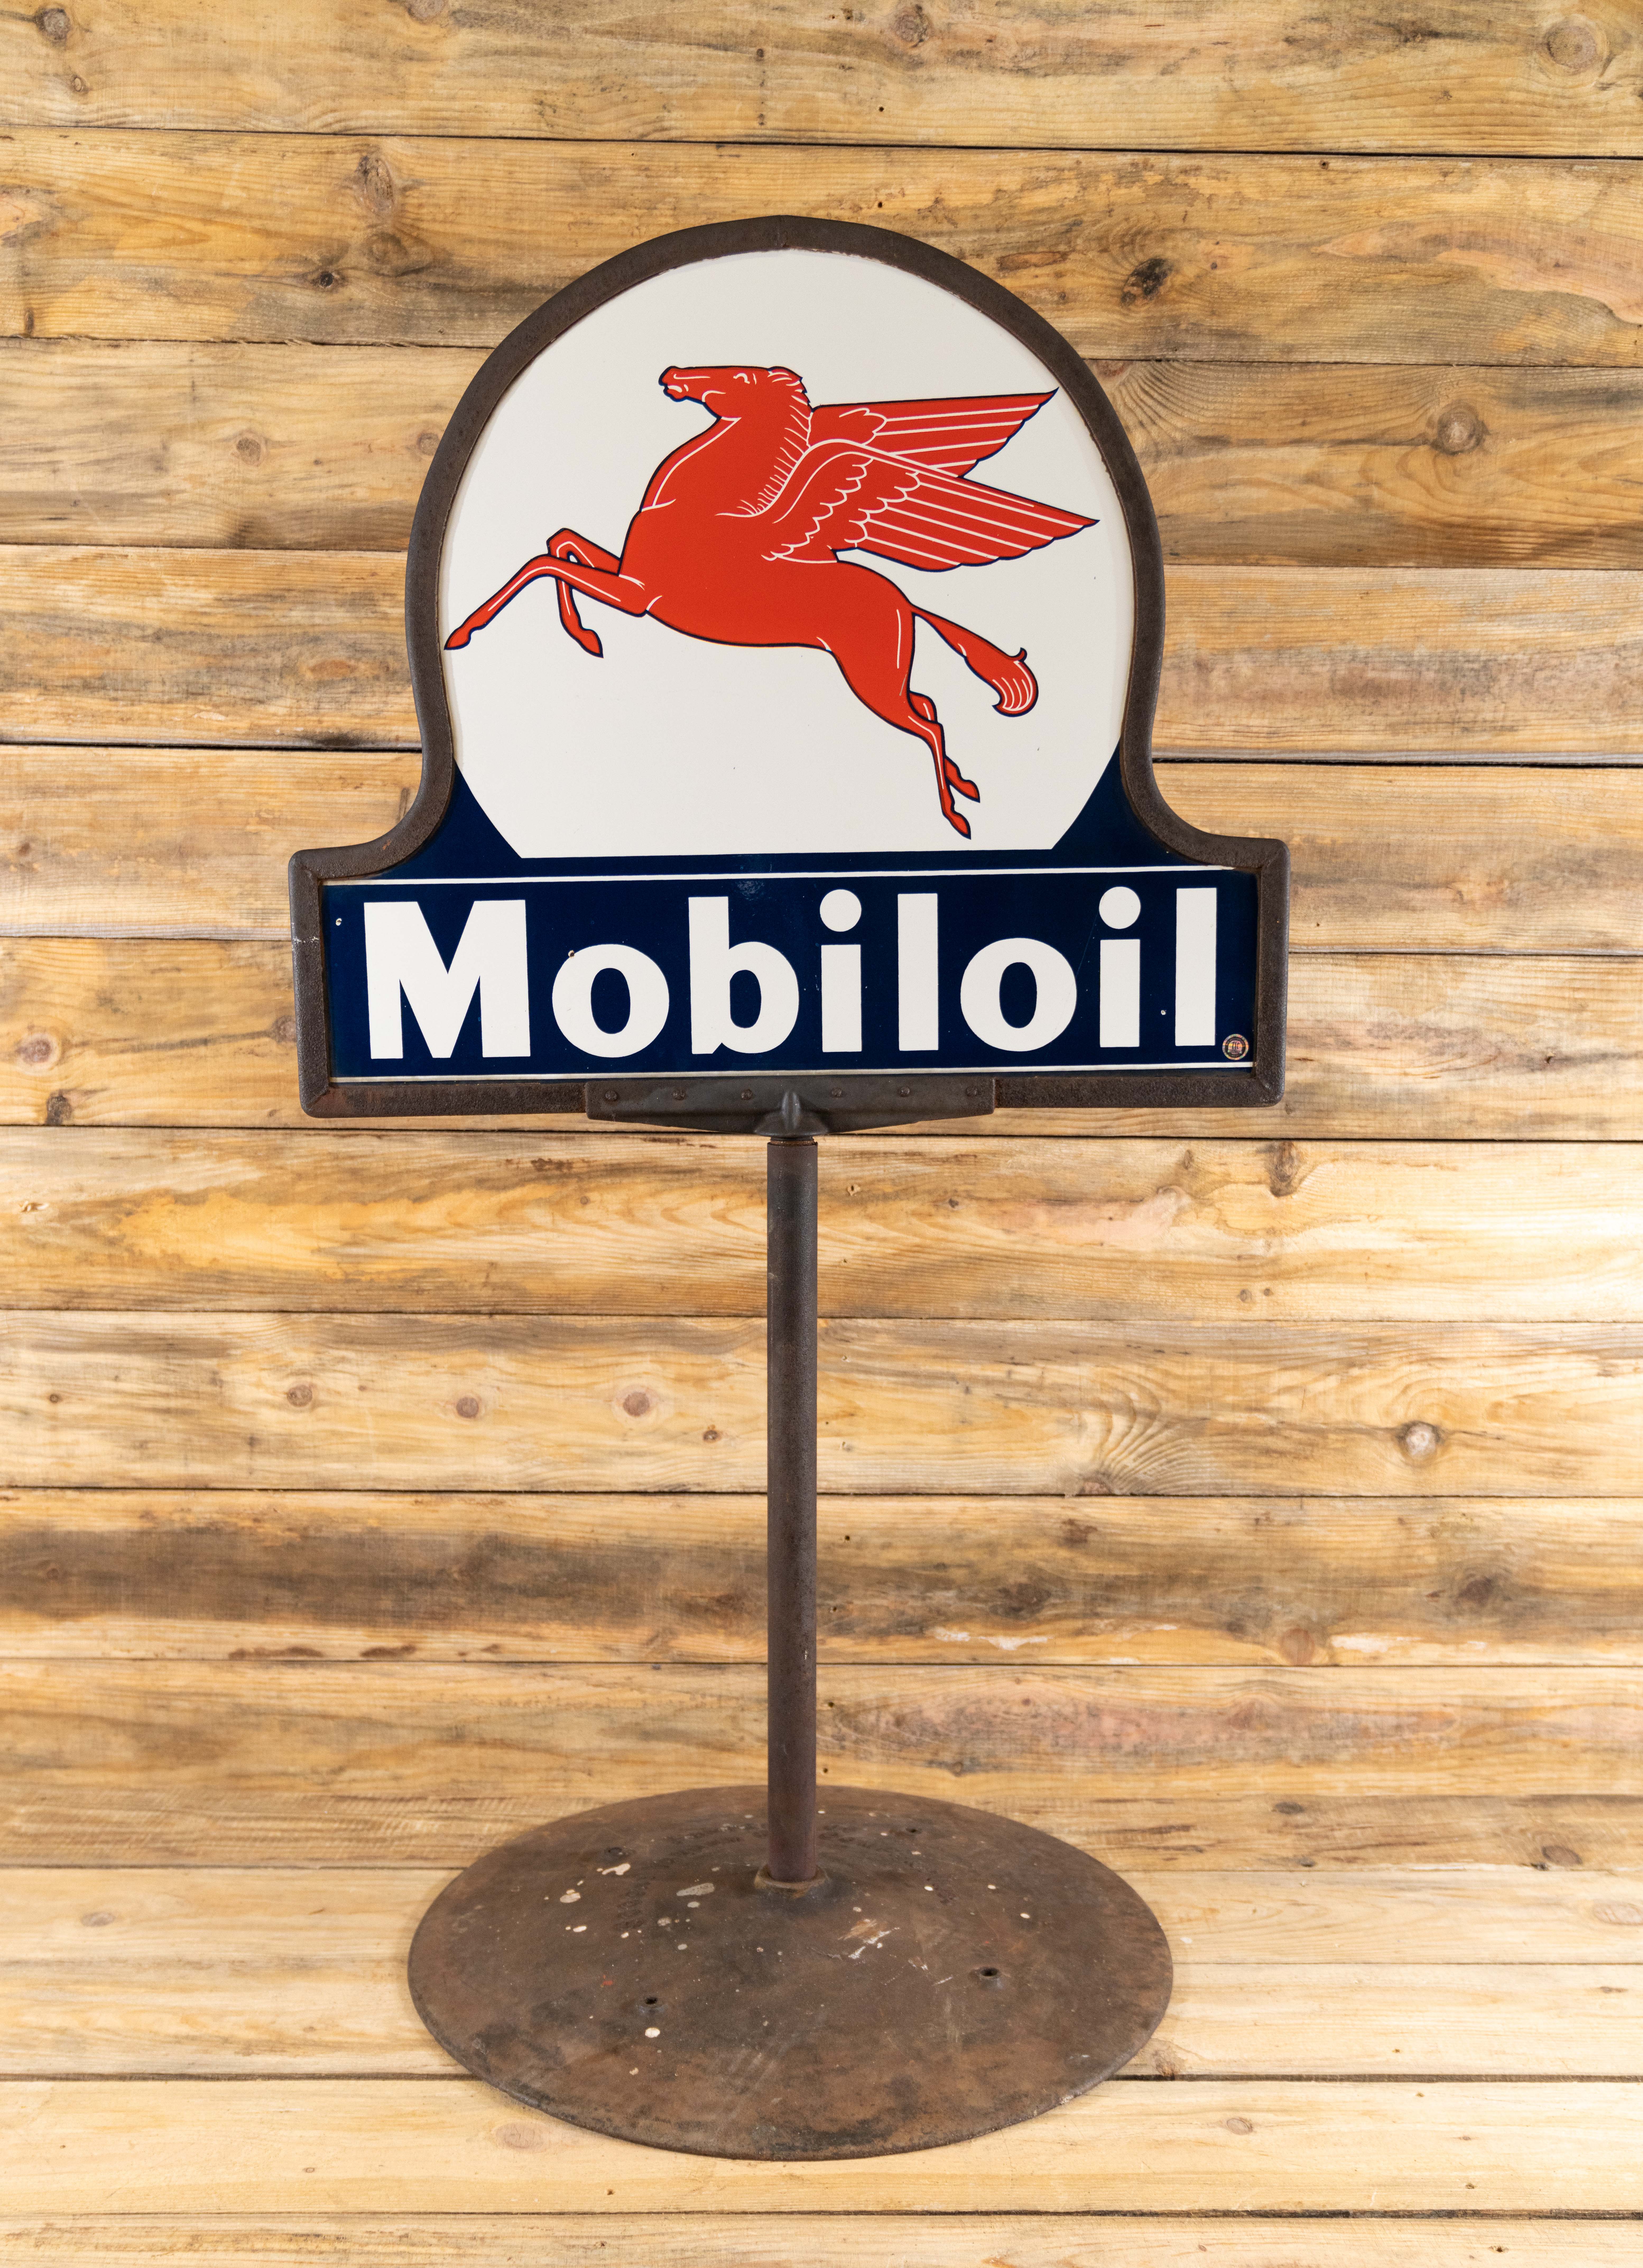 mobil oil pegasus sign